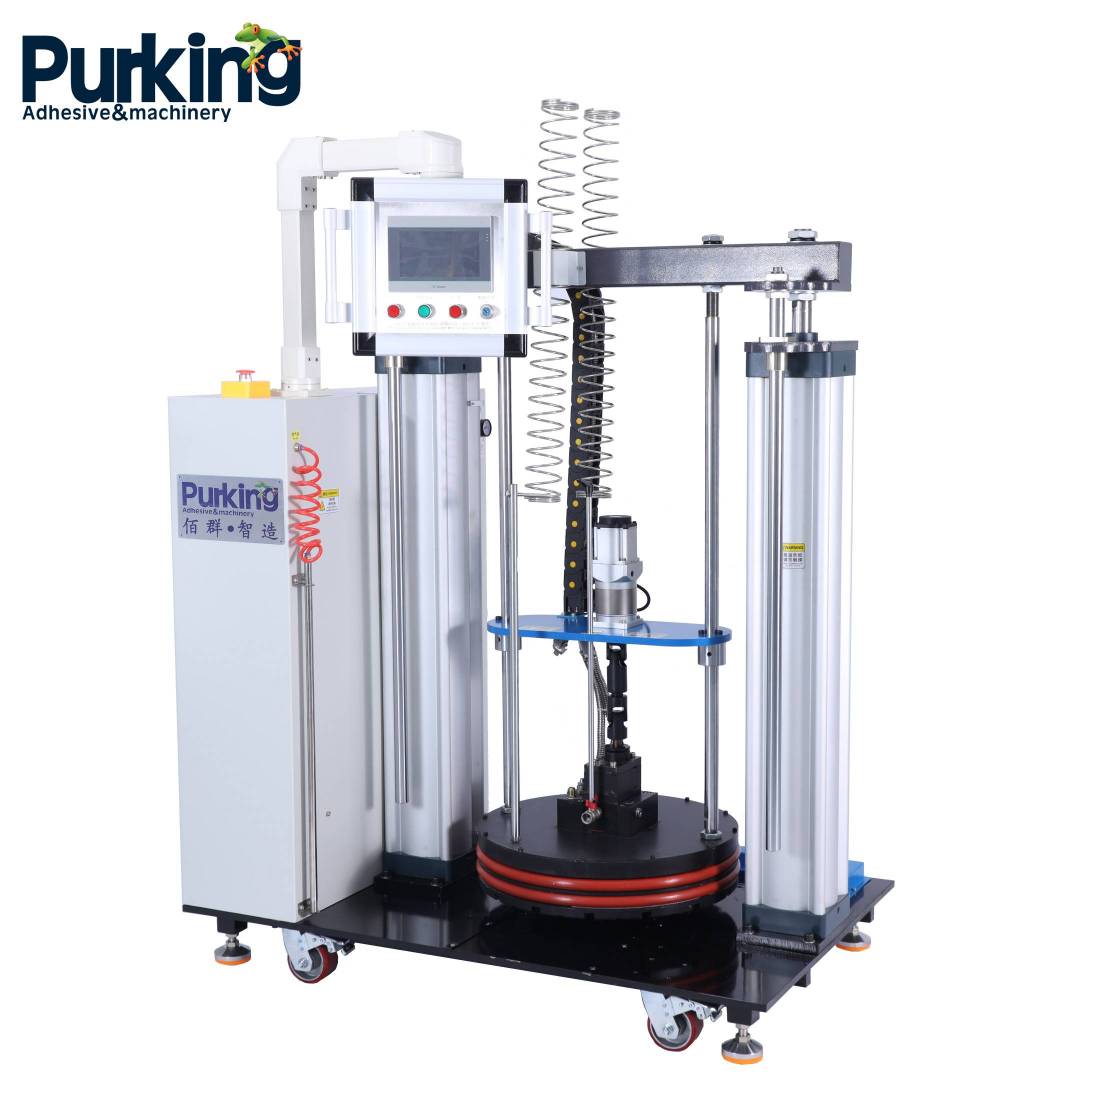 Användningsområdena för Purking smältlimsutrustning är omfattande.